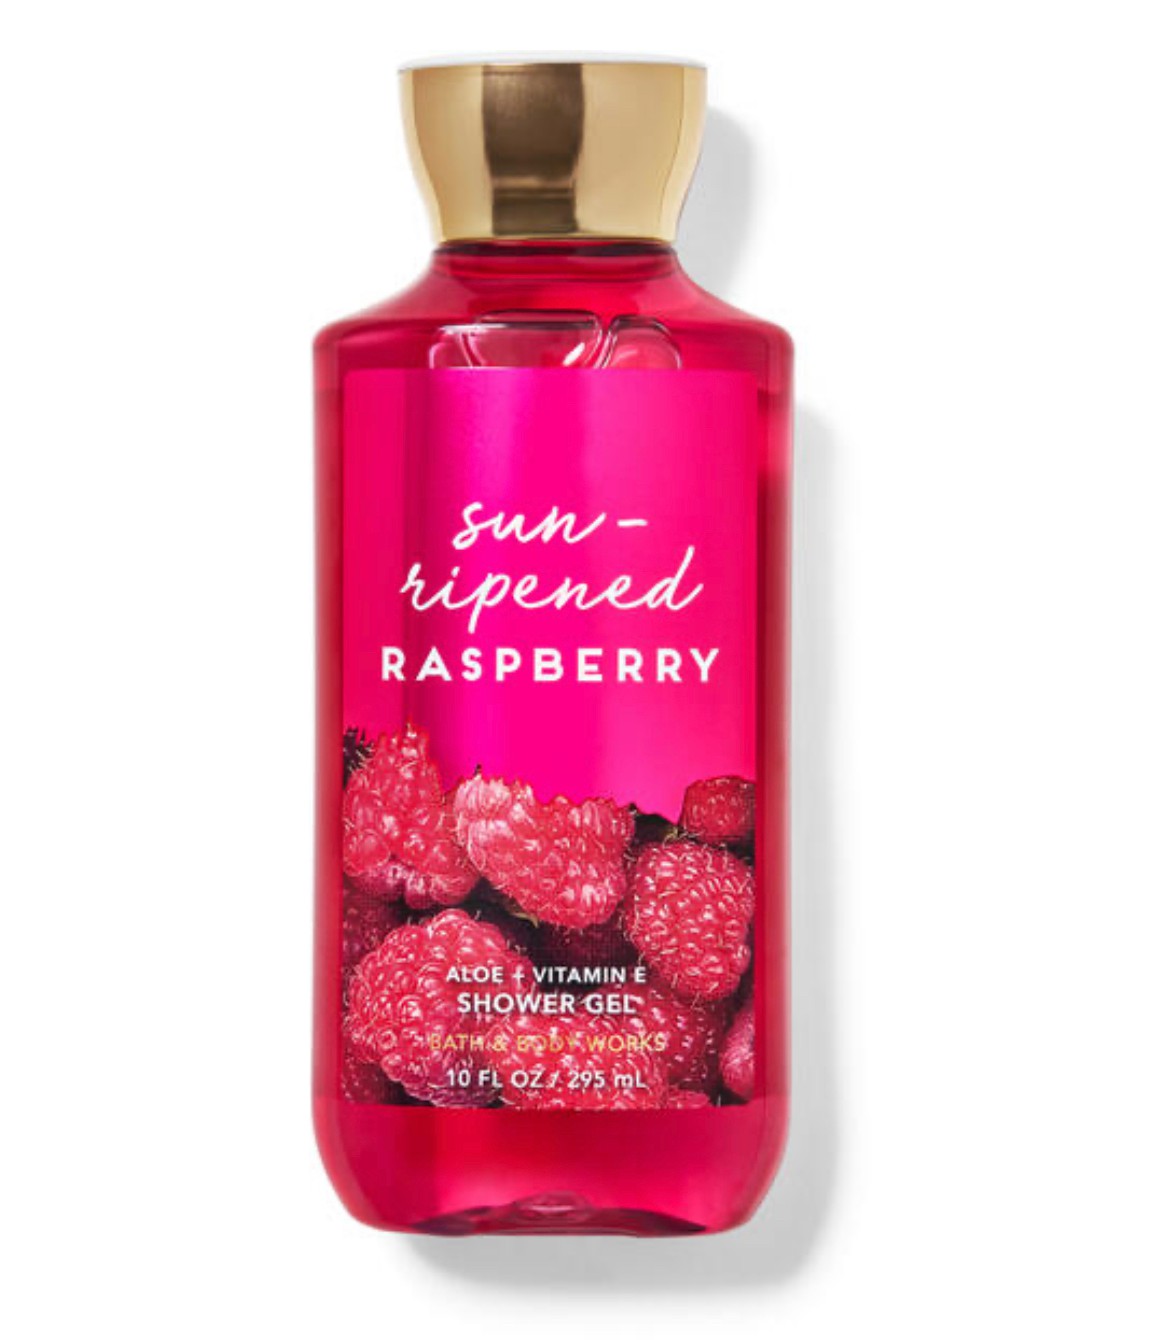 Sun-Ripened Raspberry Shower Gel - Consumos da Martina